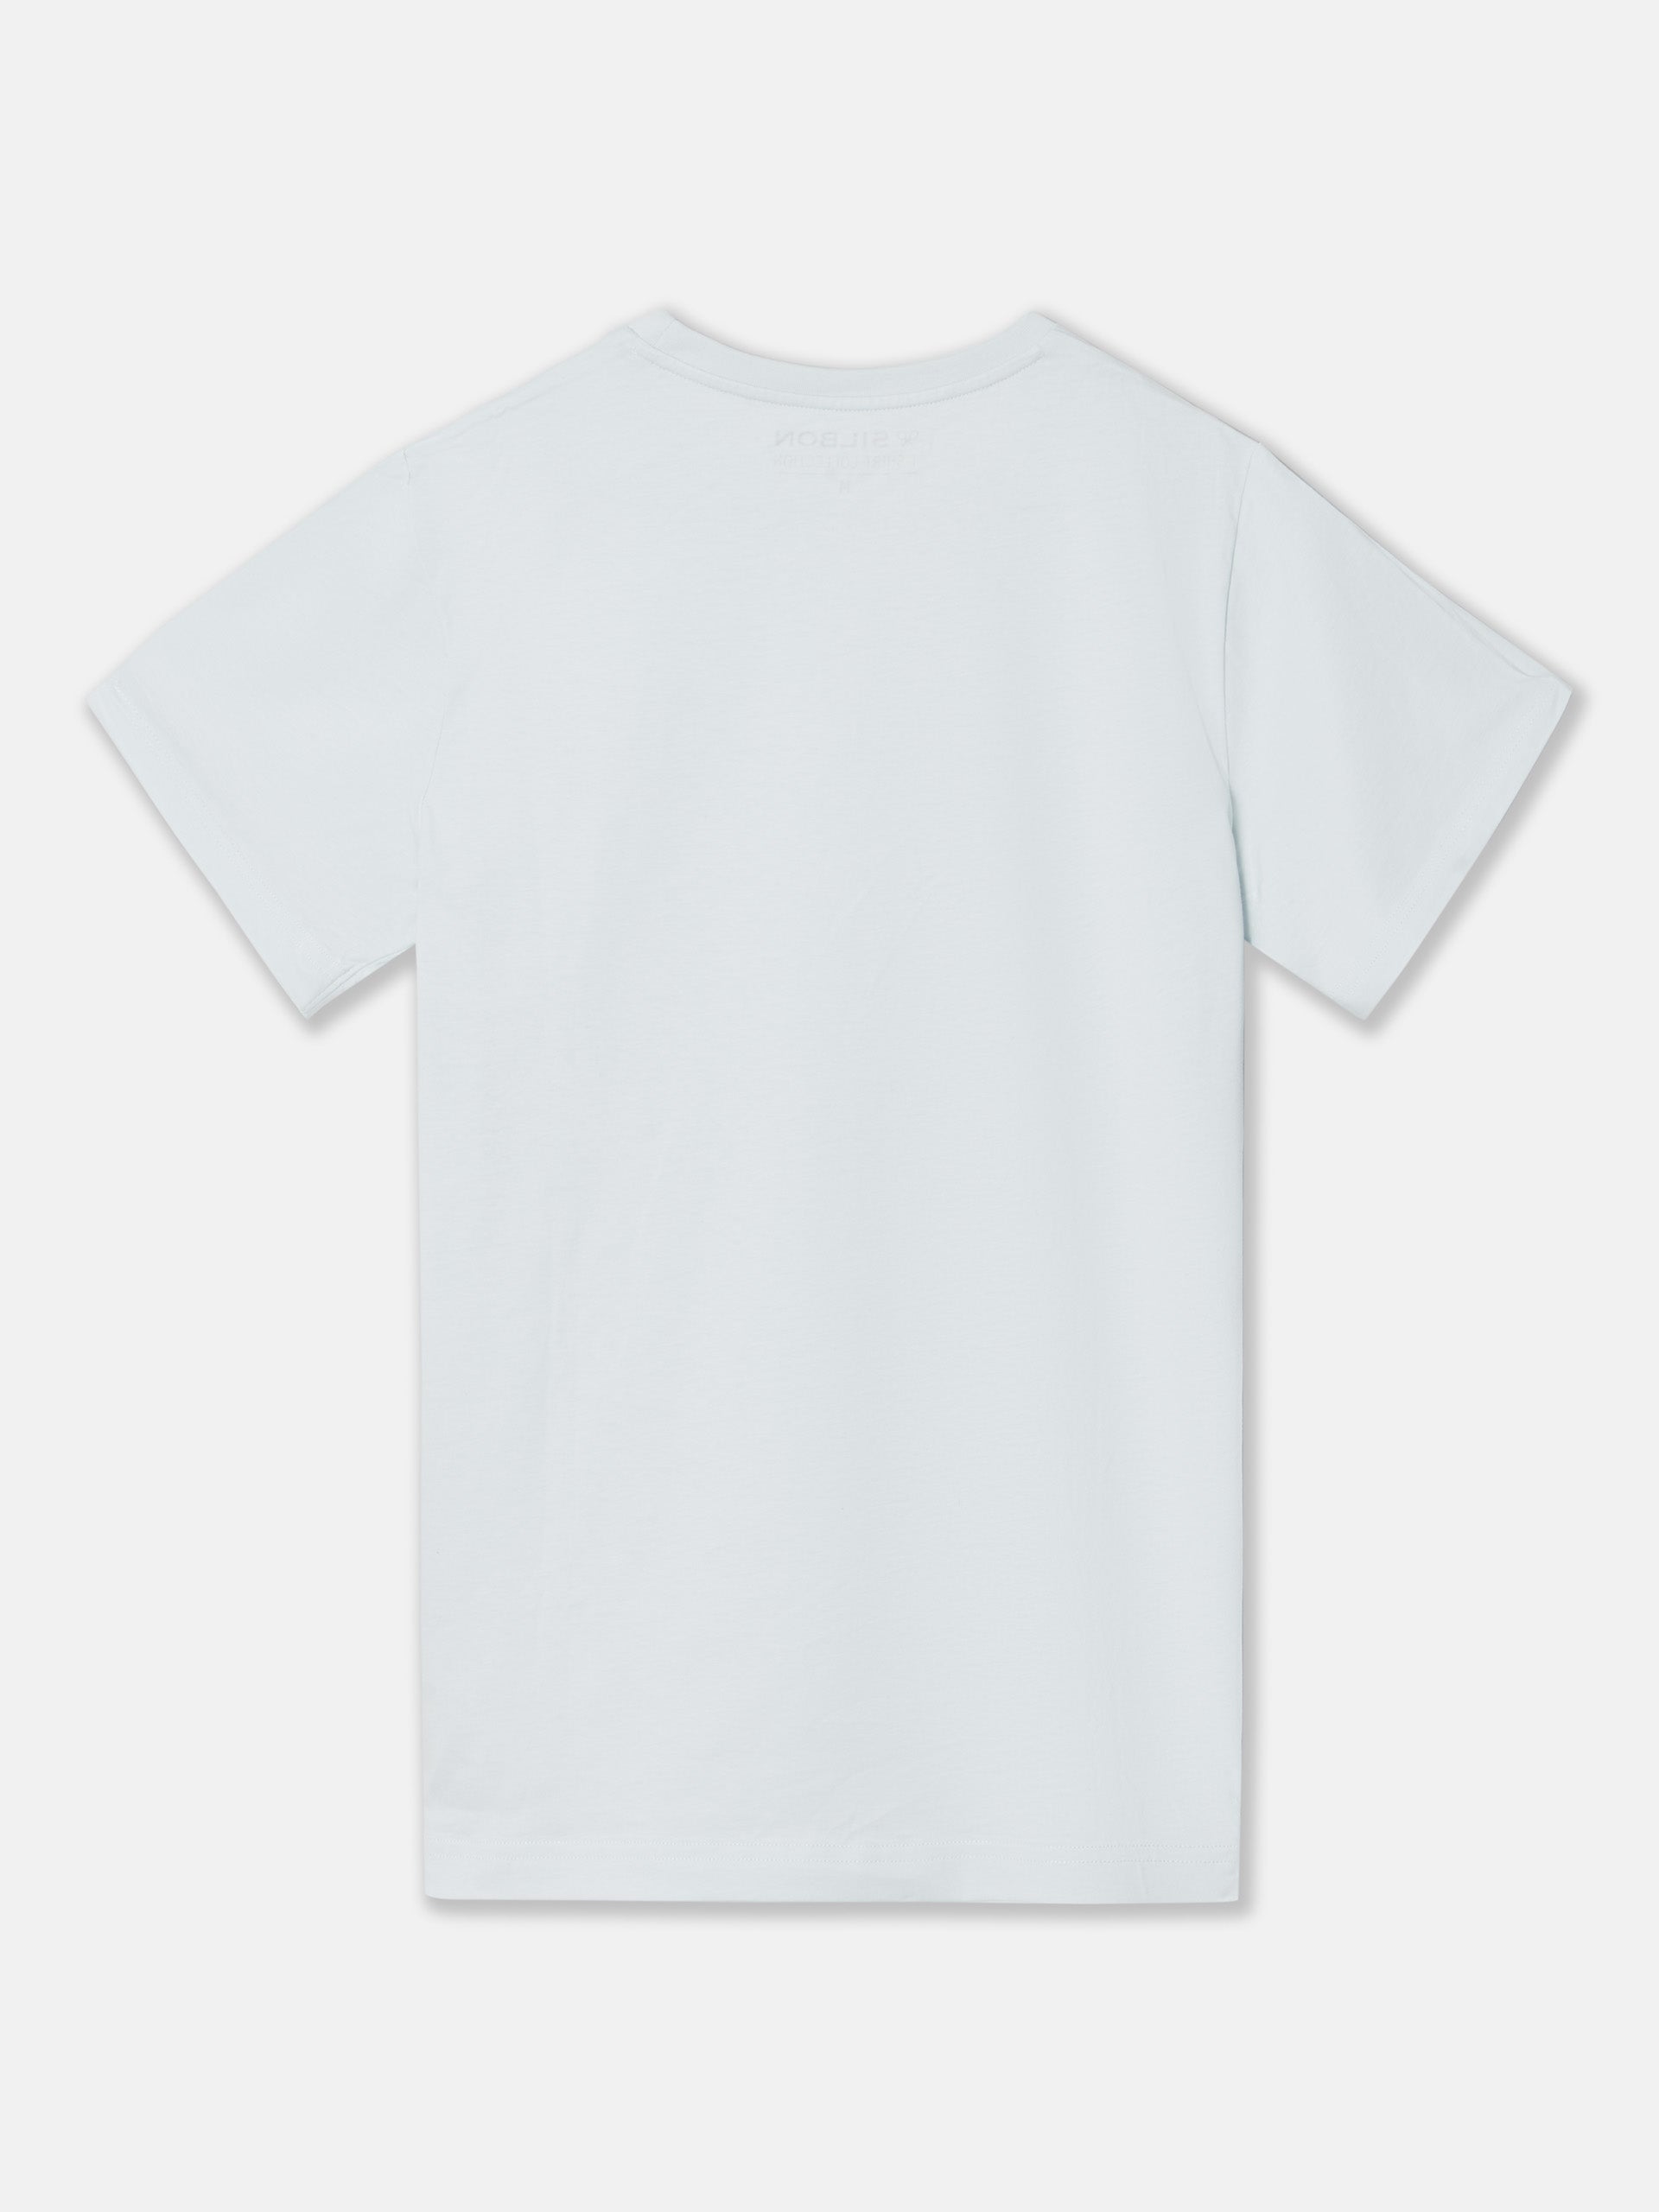 Camiseta silbon minilogo celeste